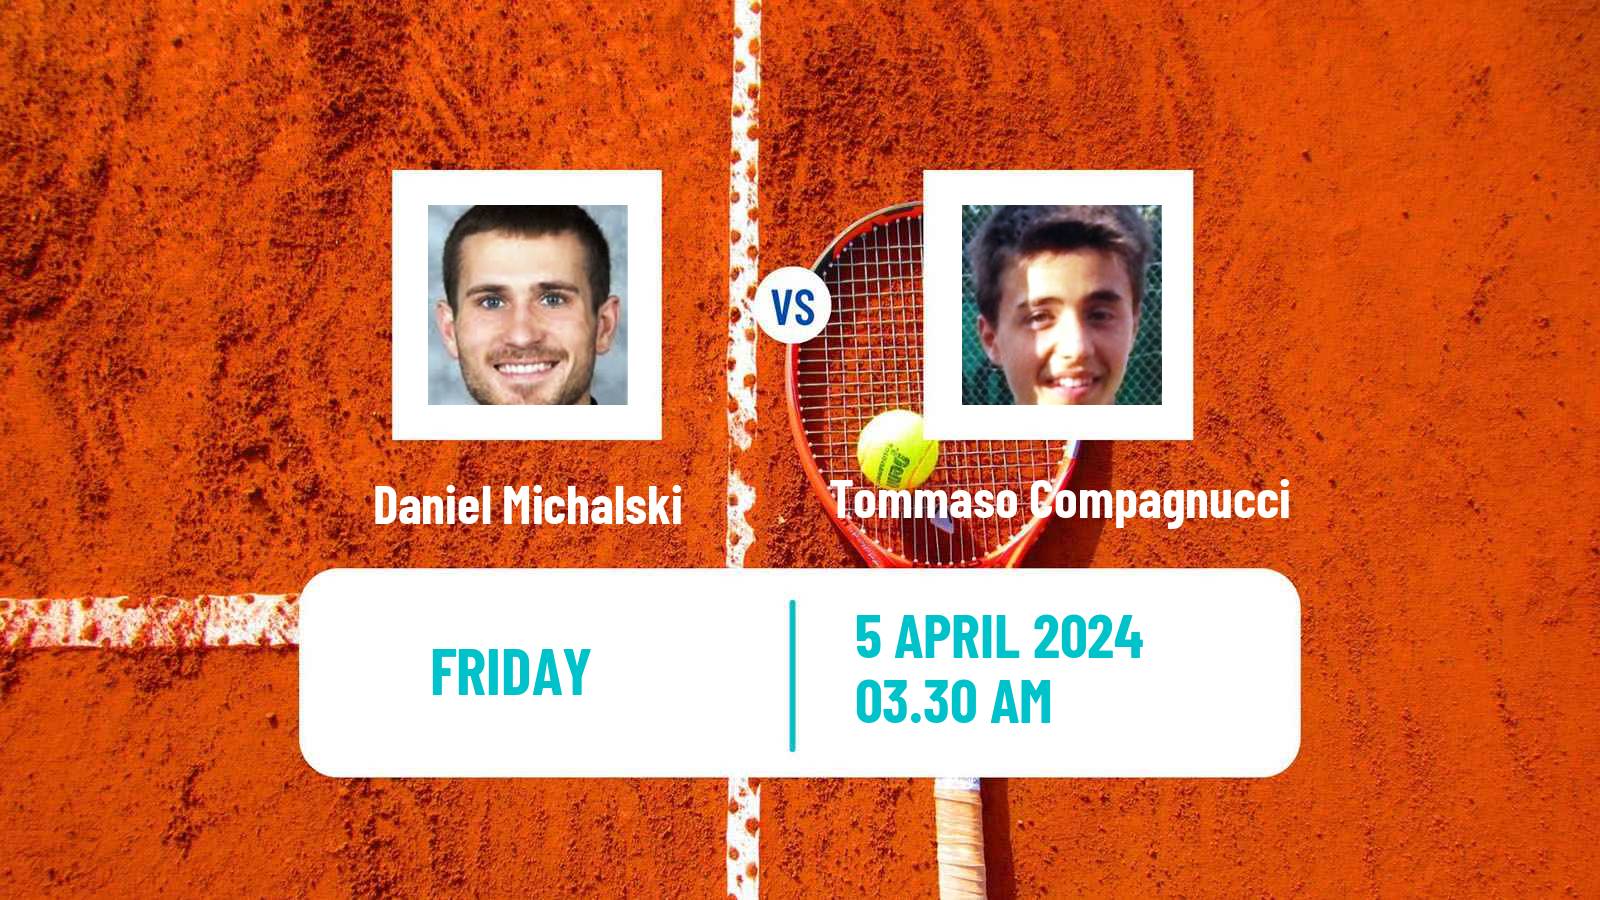 Tennis ITF M25 Santa Margherita Di Pula 2 Men Daniel Michalski - Tommaso Compagnucci